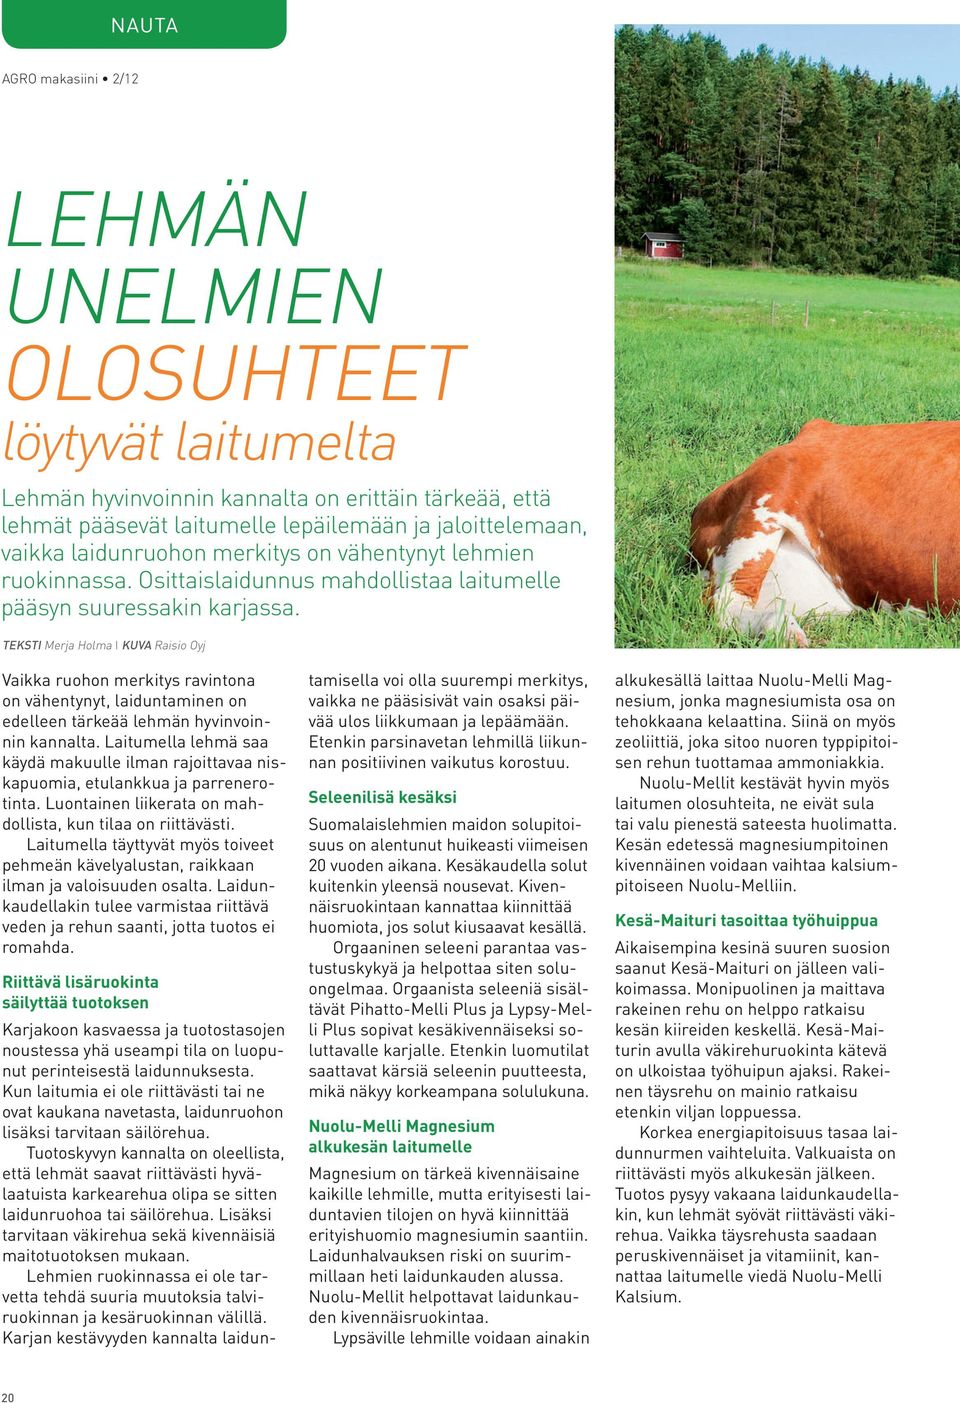 TEKSTI Merja Holma I KUVA Raisio Oyj Vaikka ruohon merkitys ravintona on vähentynyt, laiduntaminen on edelleen tärkeää lehmän hyvinvoinnin kannalta.